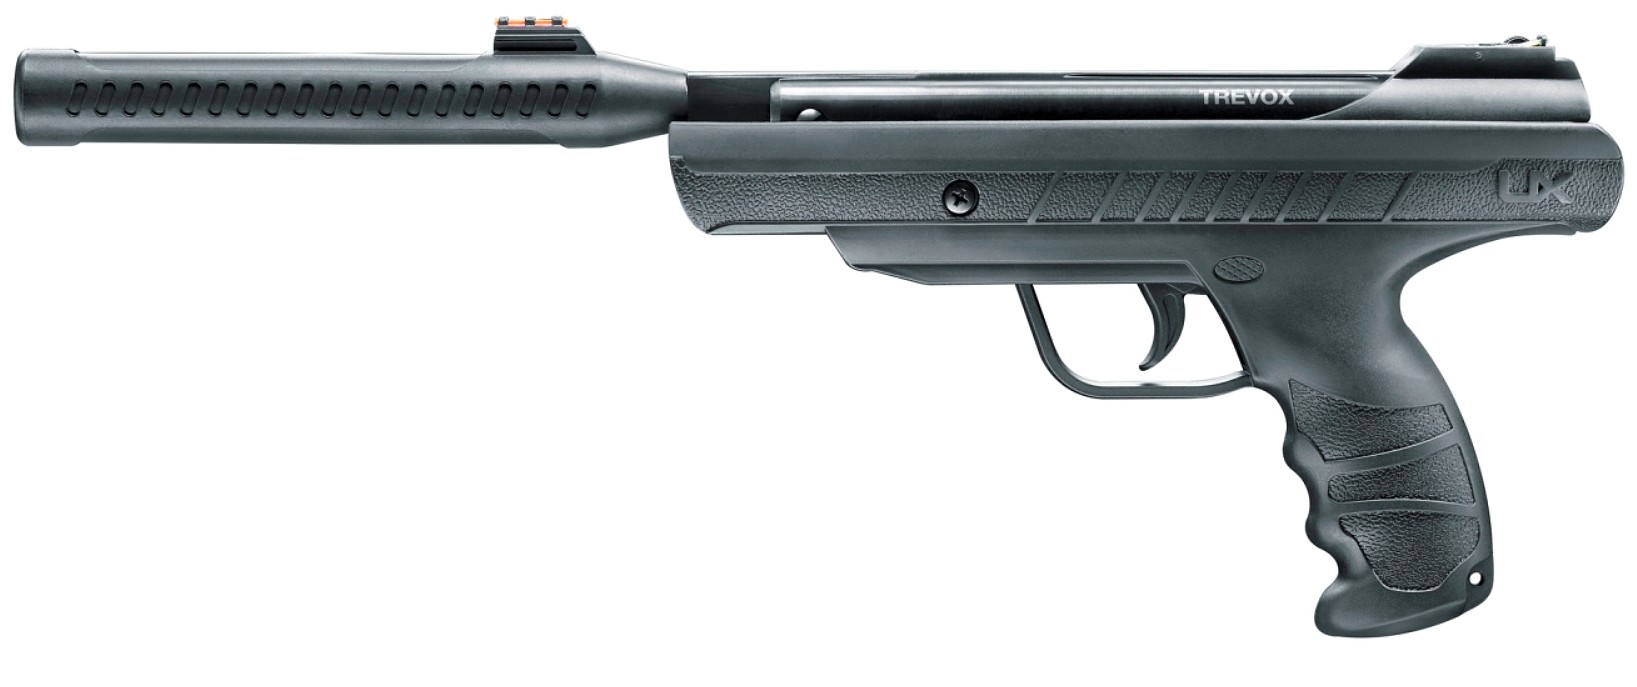 Vzduchová pištoľ UX Trevox, kal. 4,5mm